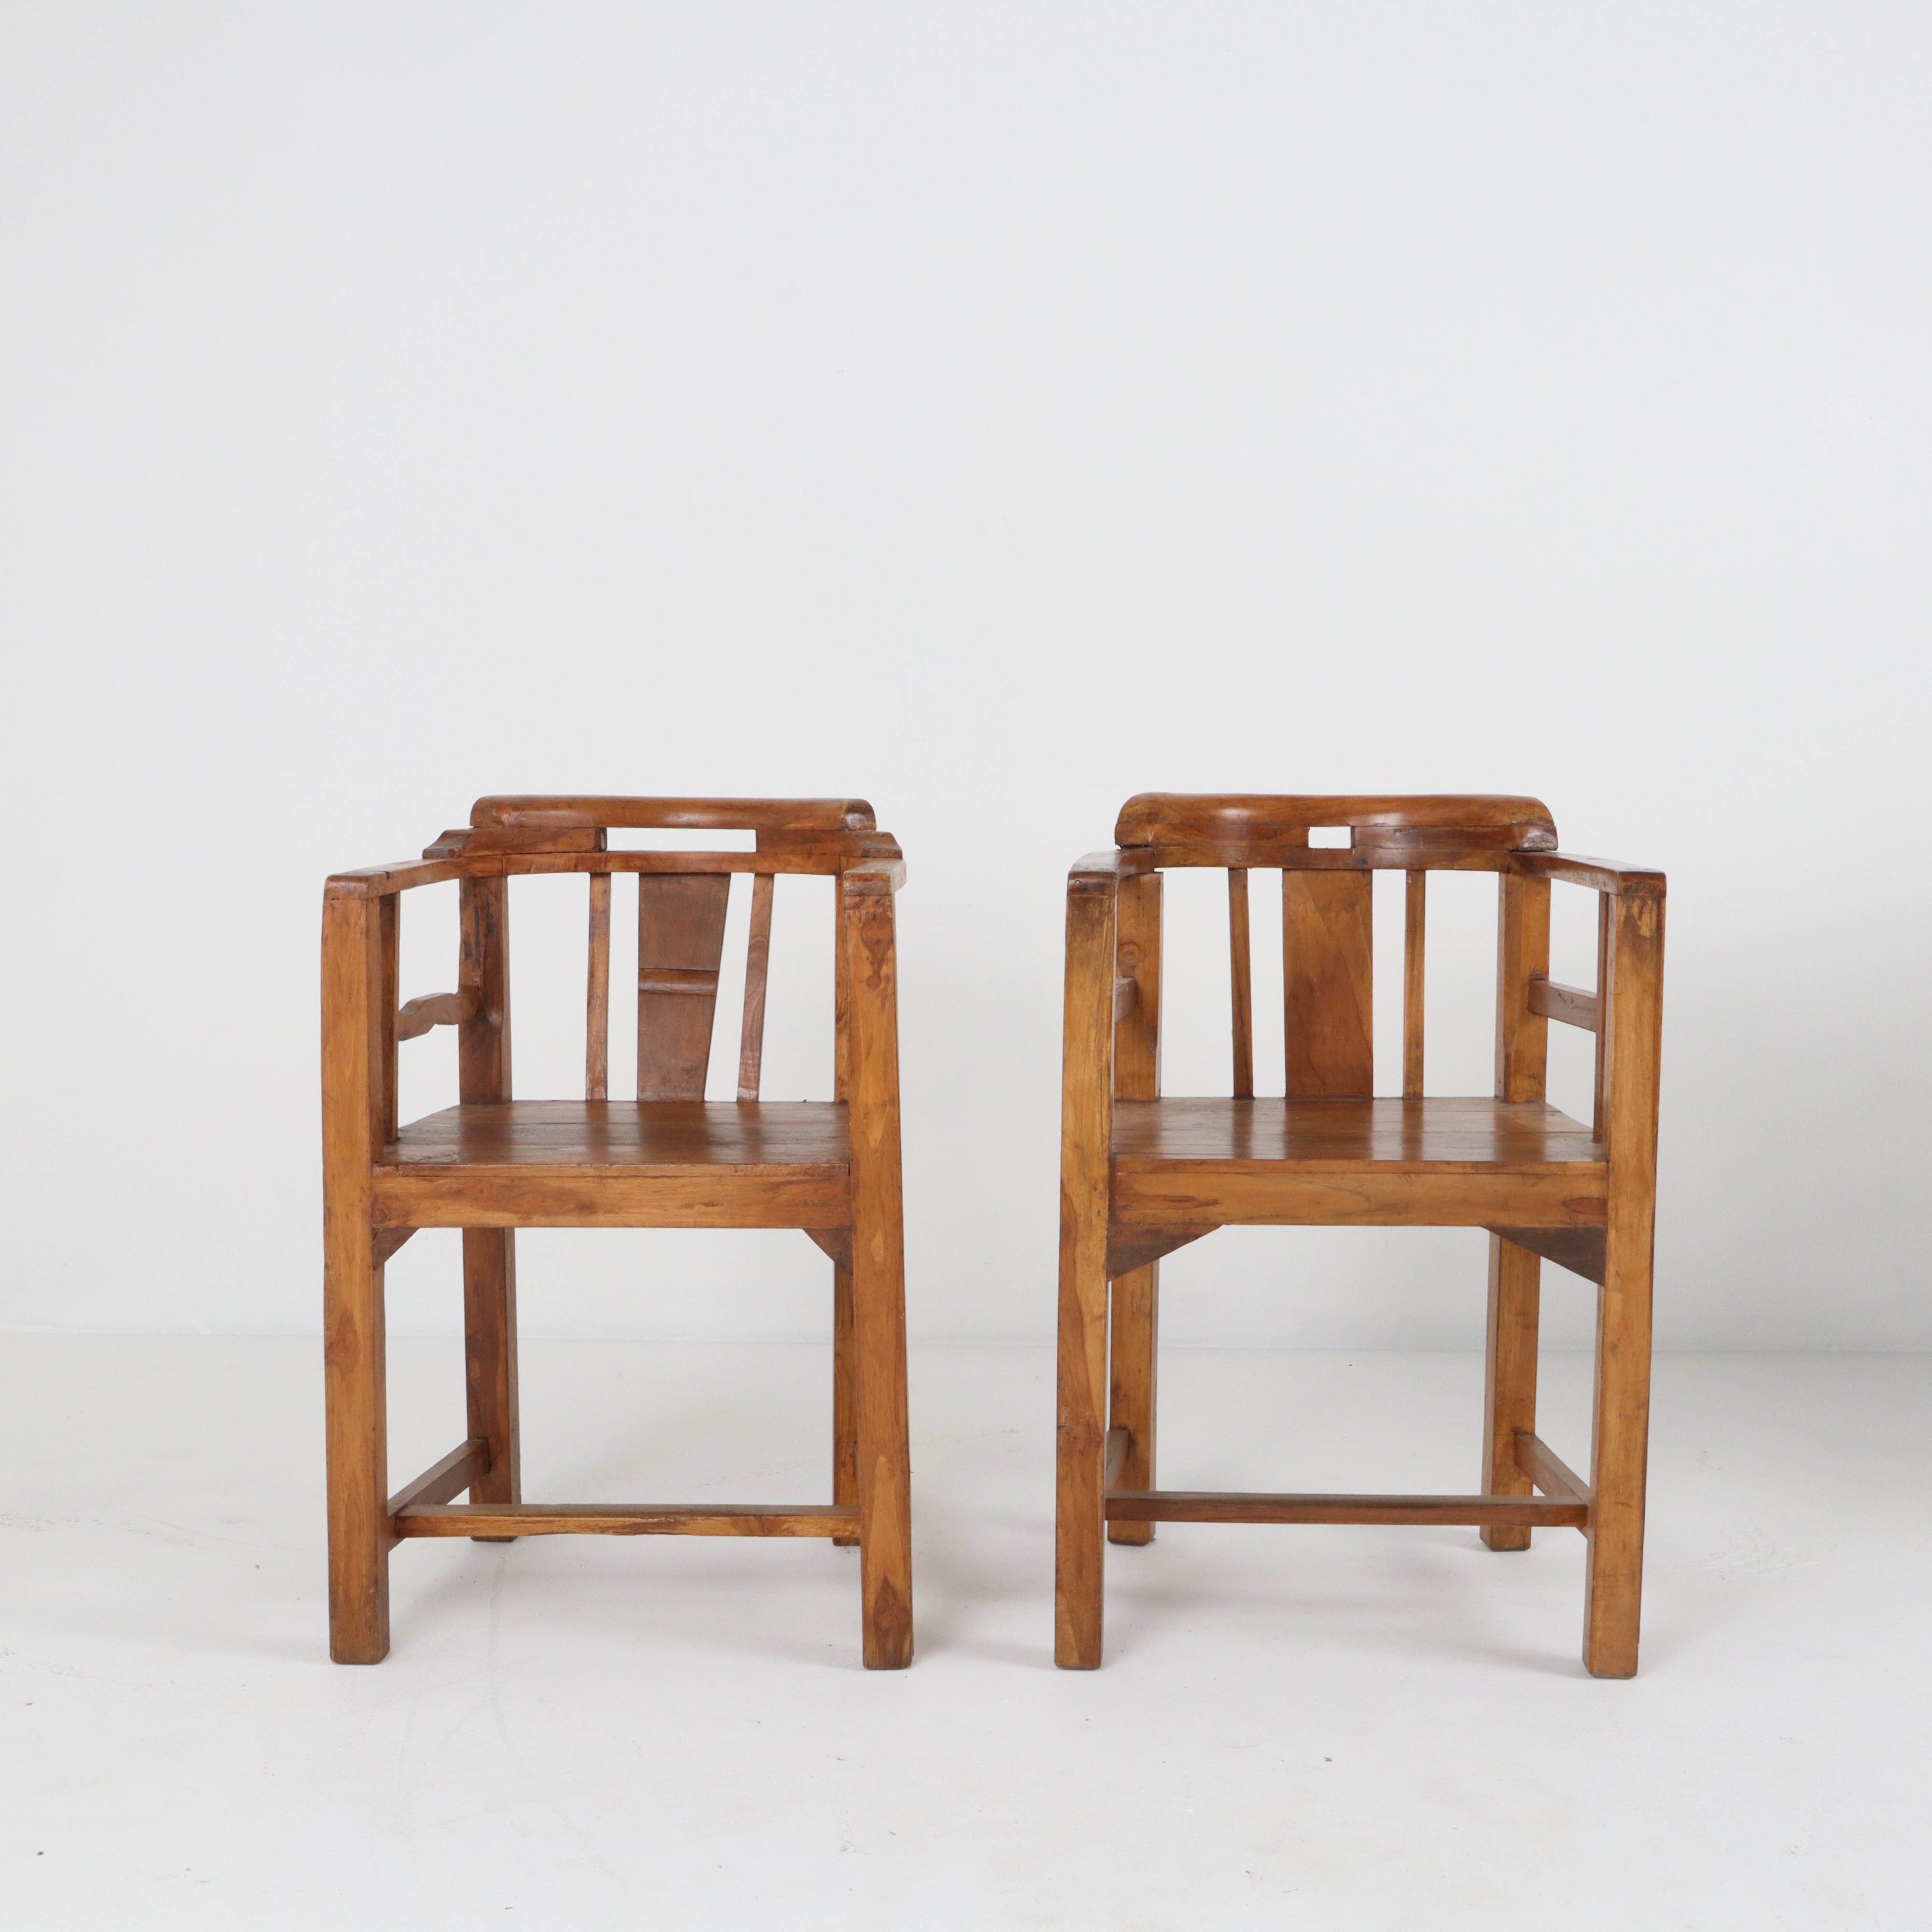 Pair of Antique Spanish Chairs c1910